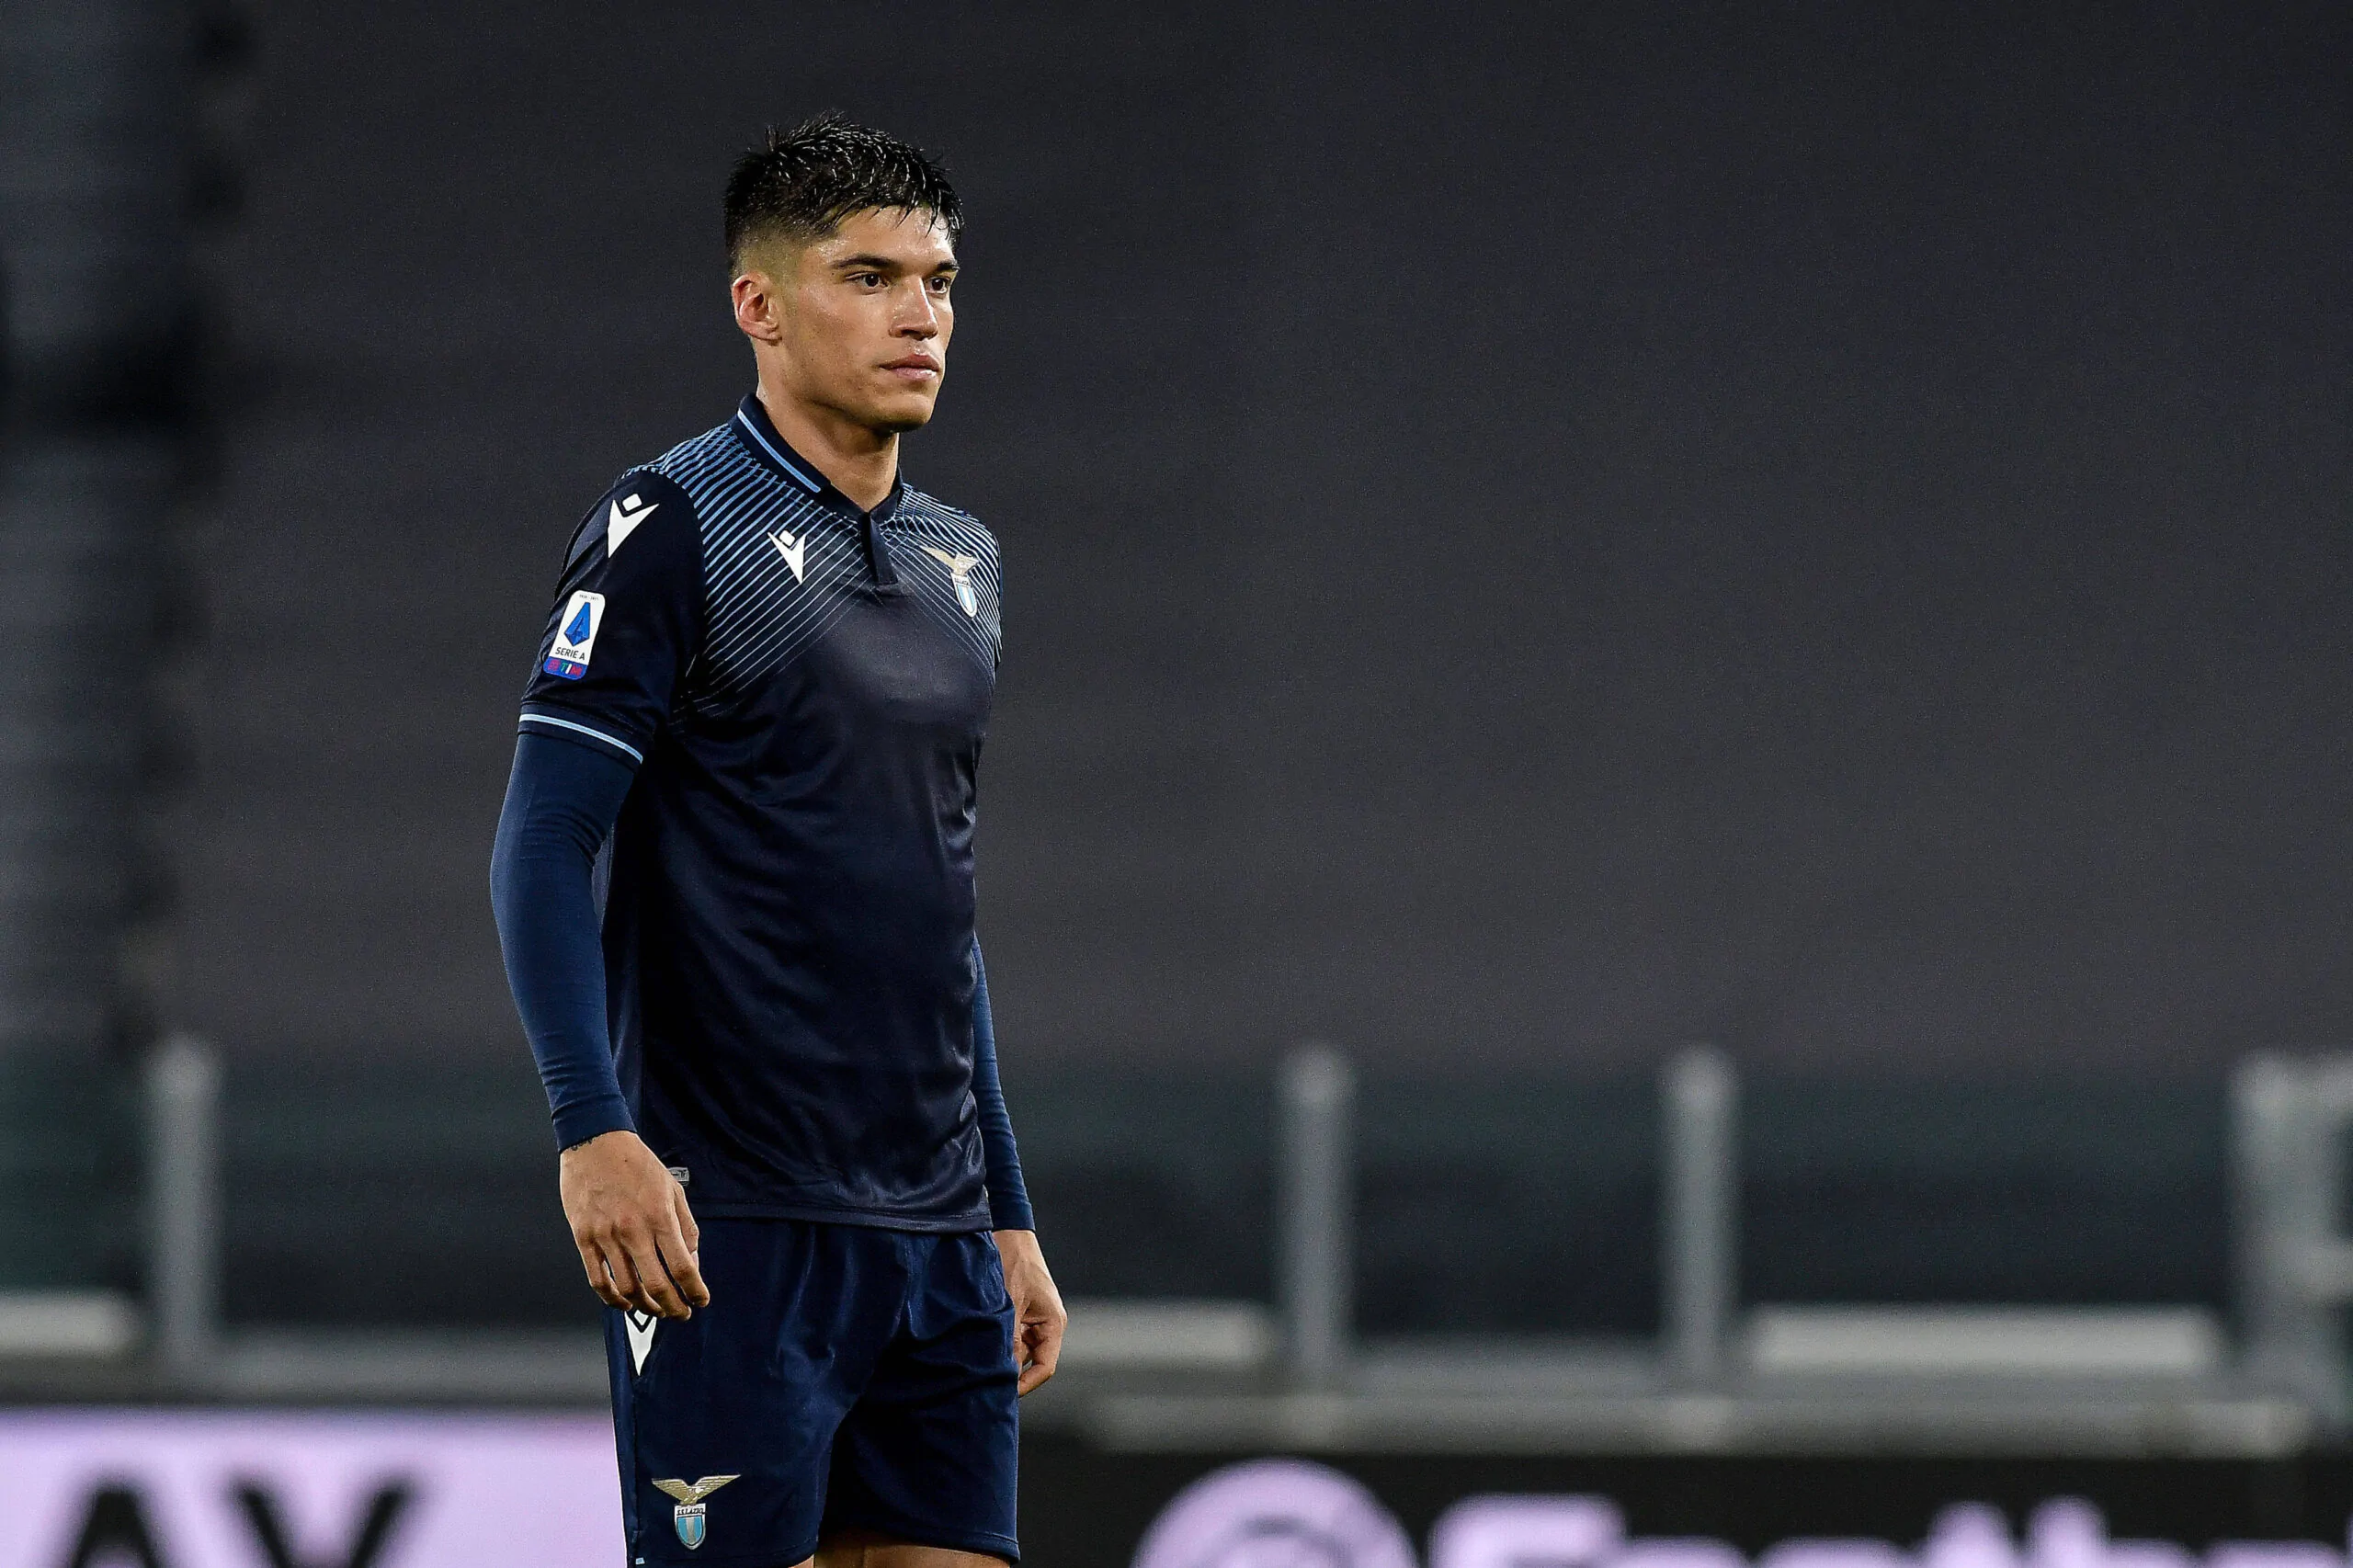 L’Inter non molla la presa e ci riprova per Correa: le ultime